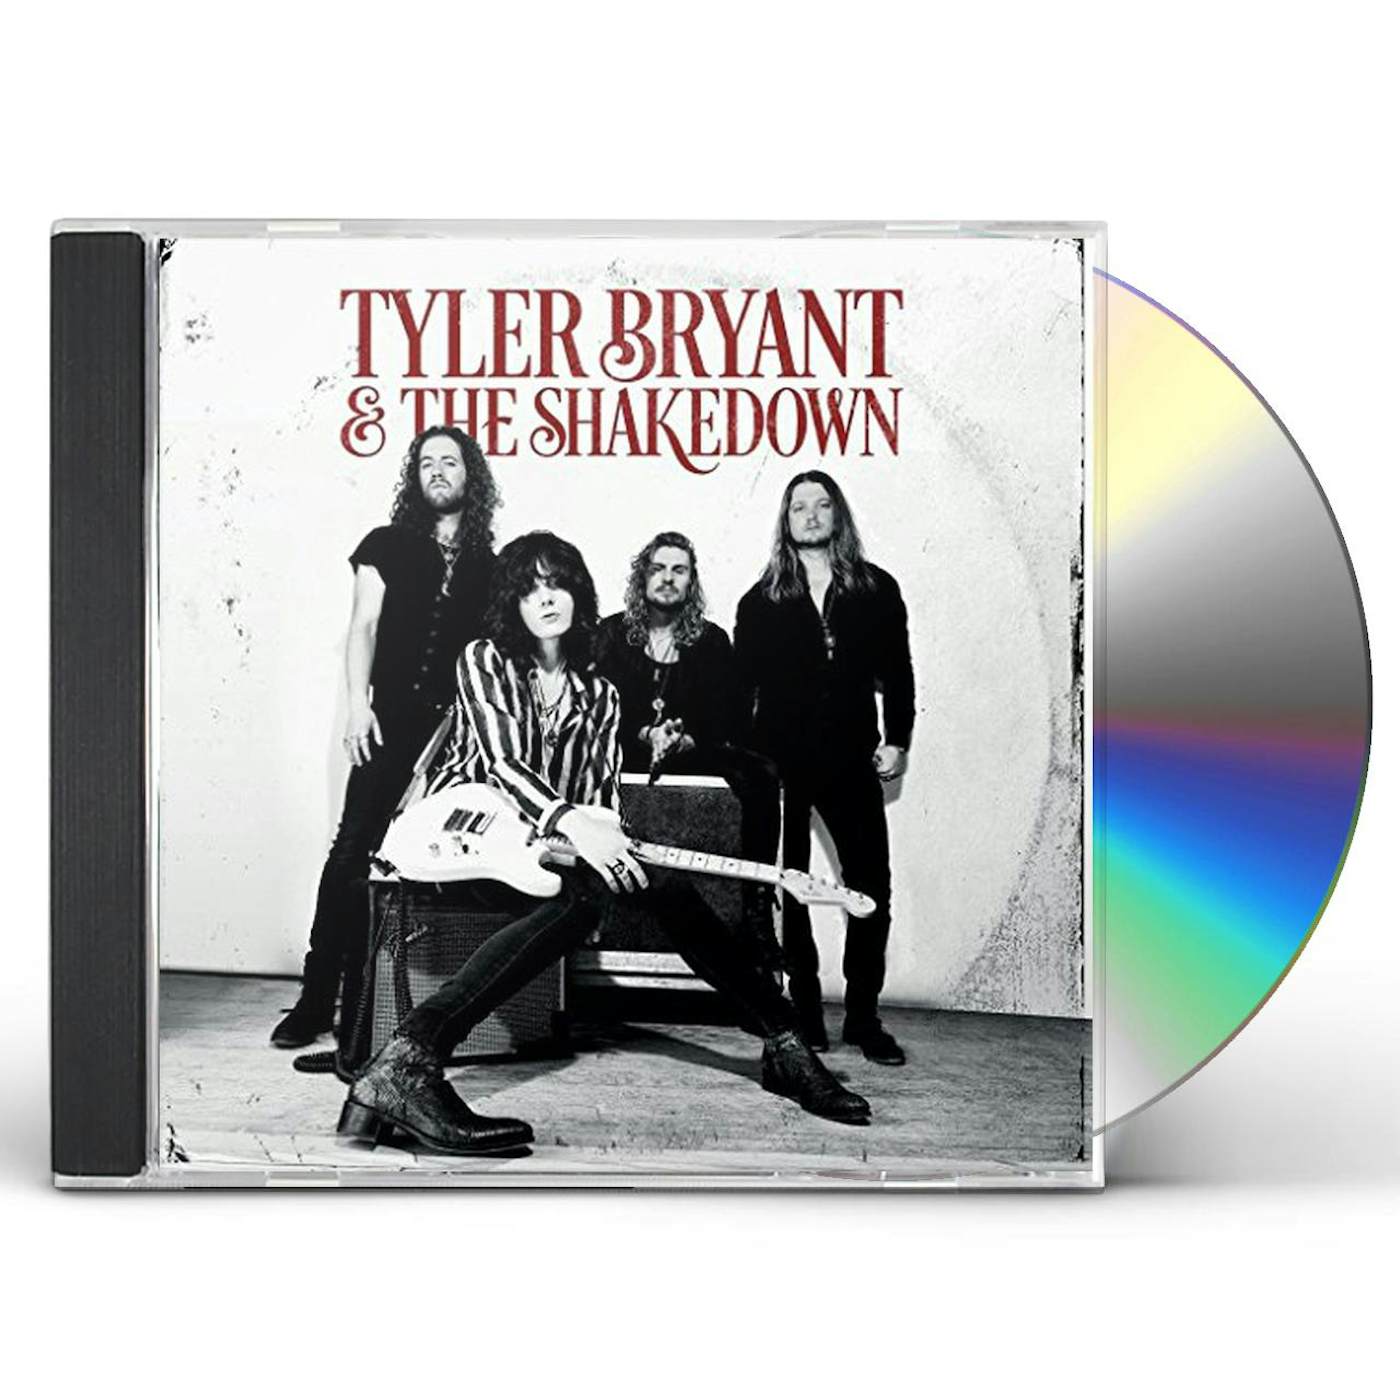 TYLER BRYANT & THE SHAKEDOWN CD